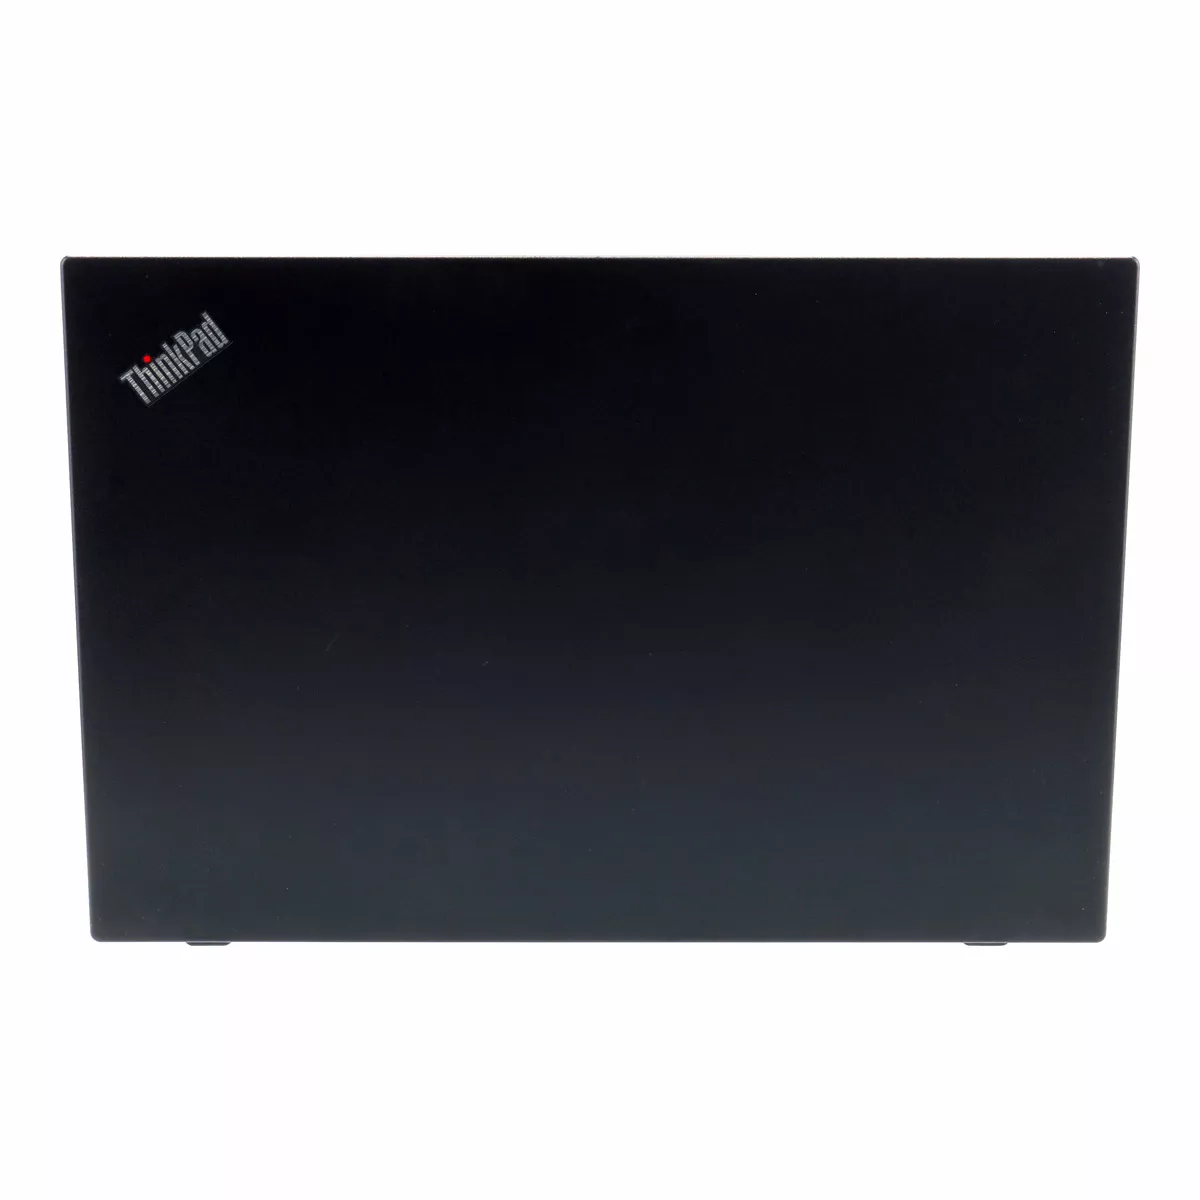 Lenovo ThinkPad L590 Core i5 8365U 8 GB 240 GB M.2 nVME SSD Webcam A+